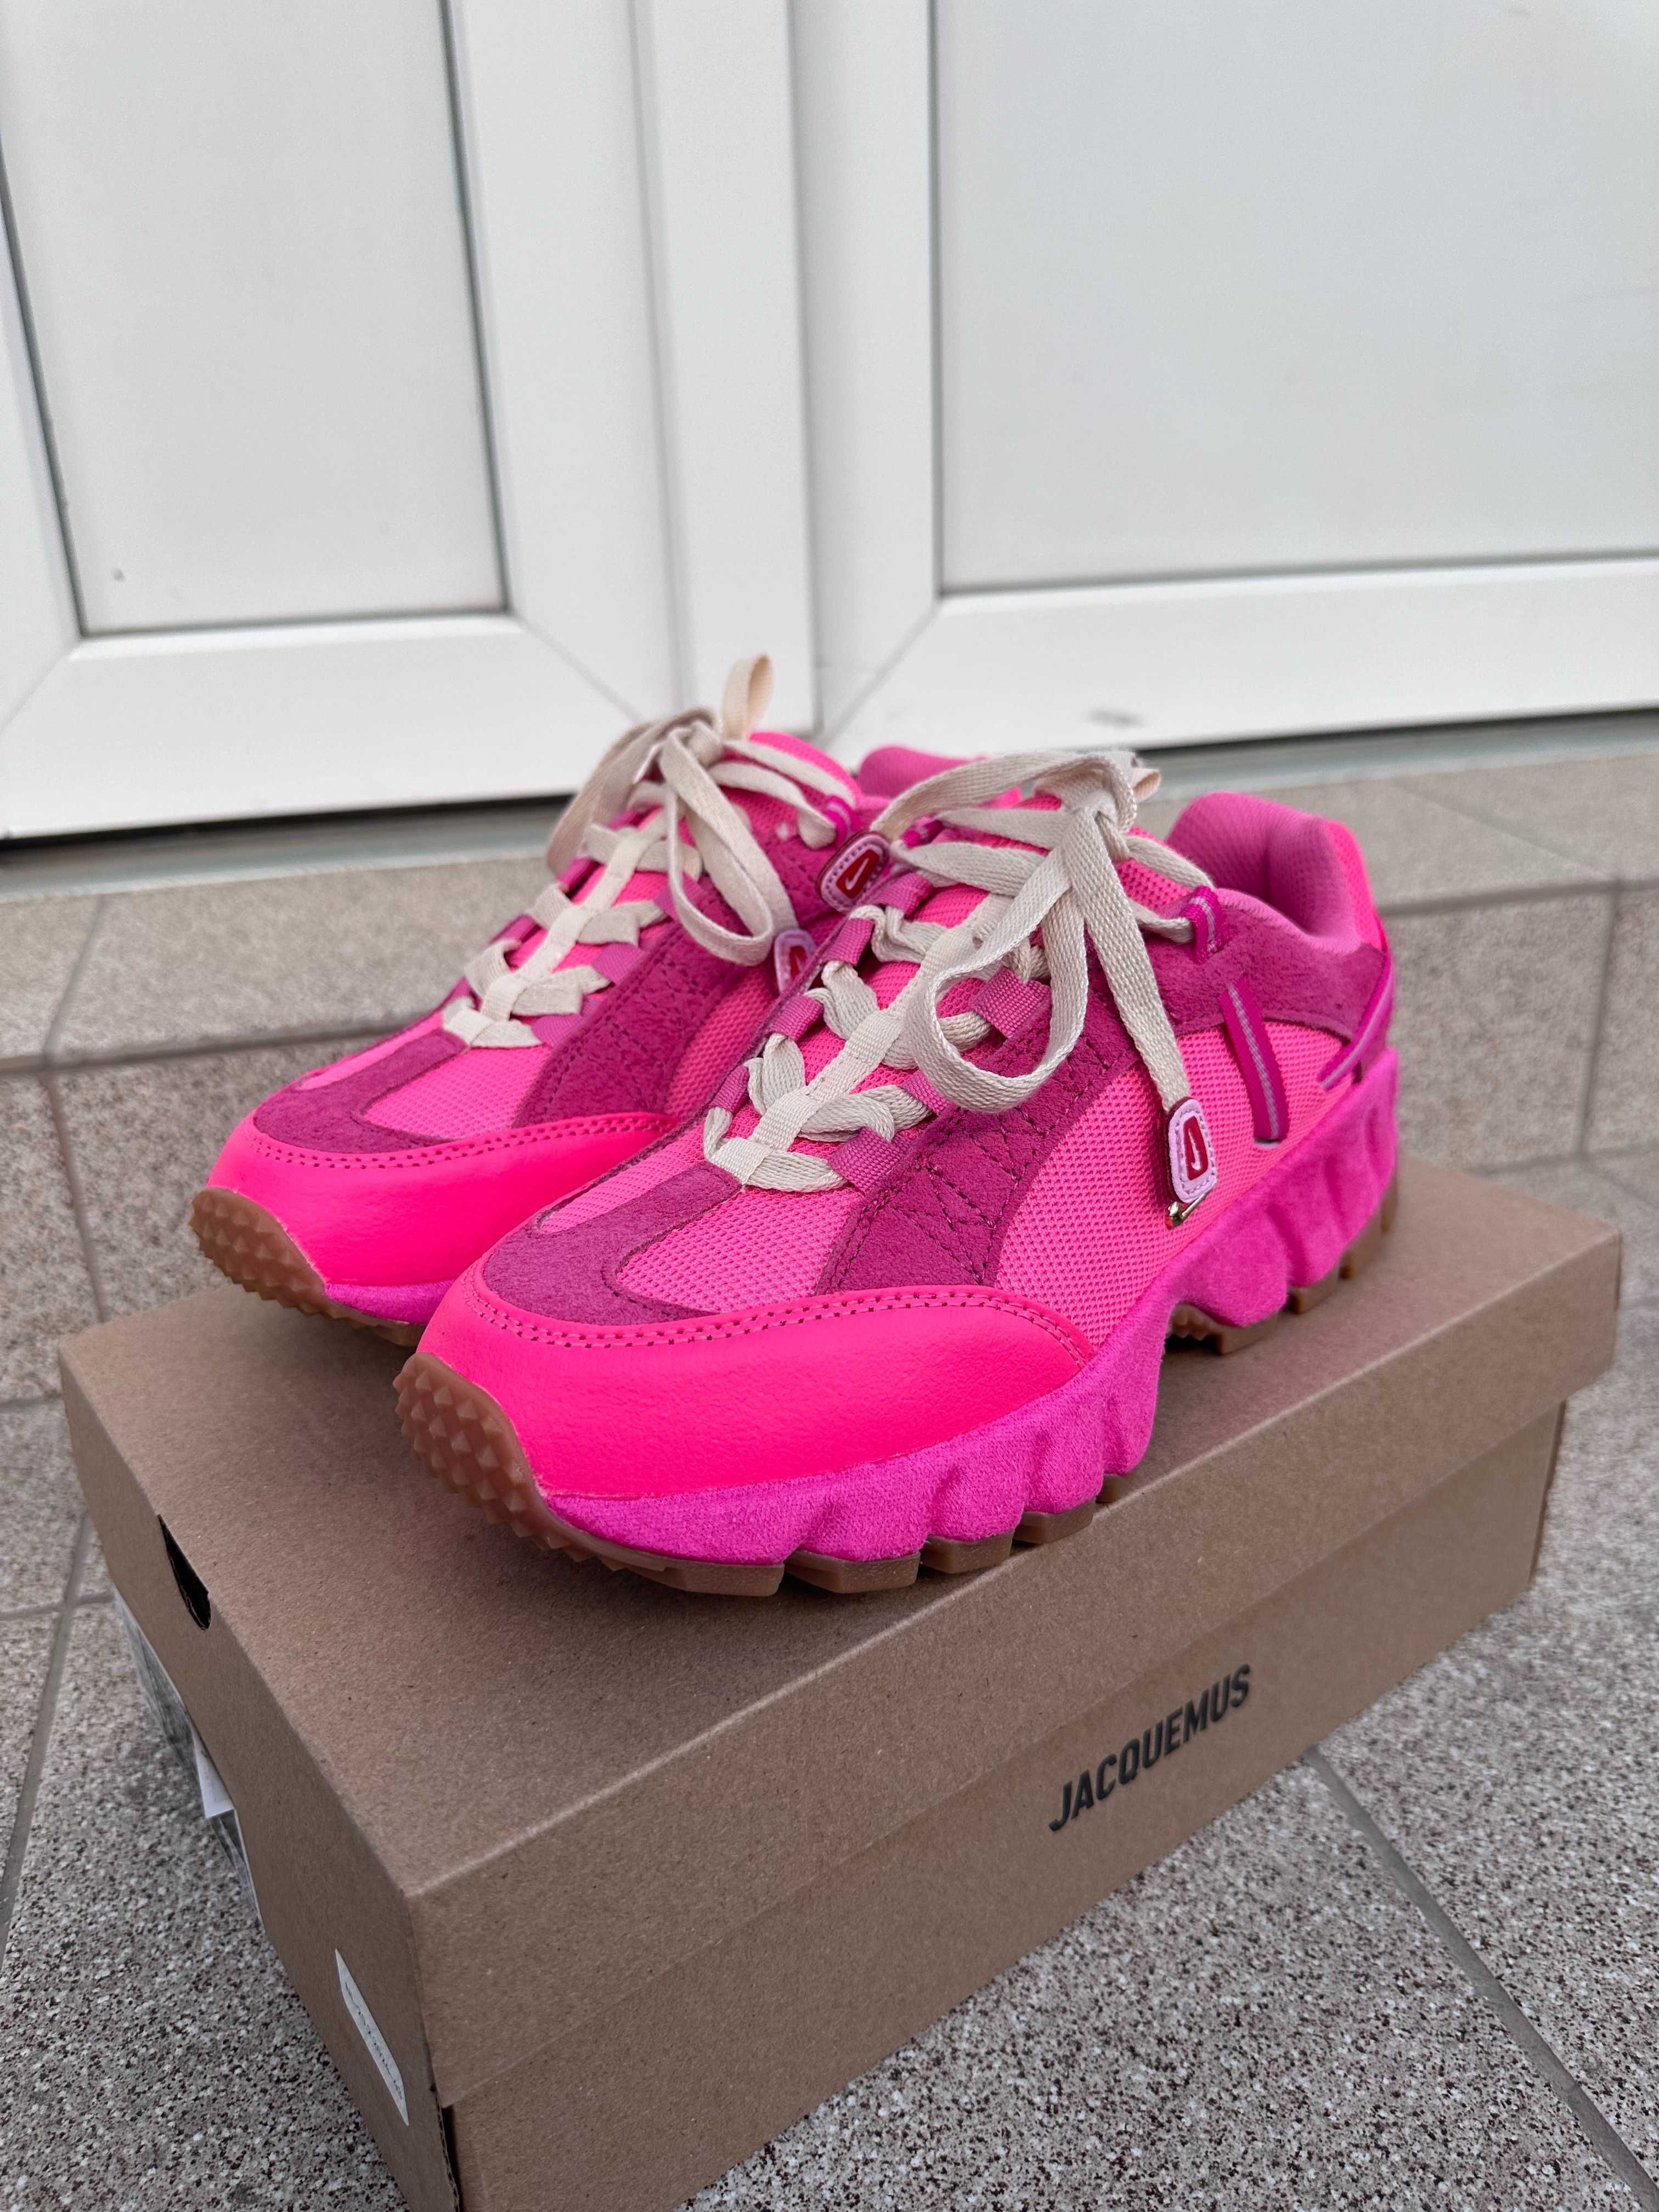 Jacquemus x Nike Humara Pink